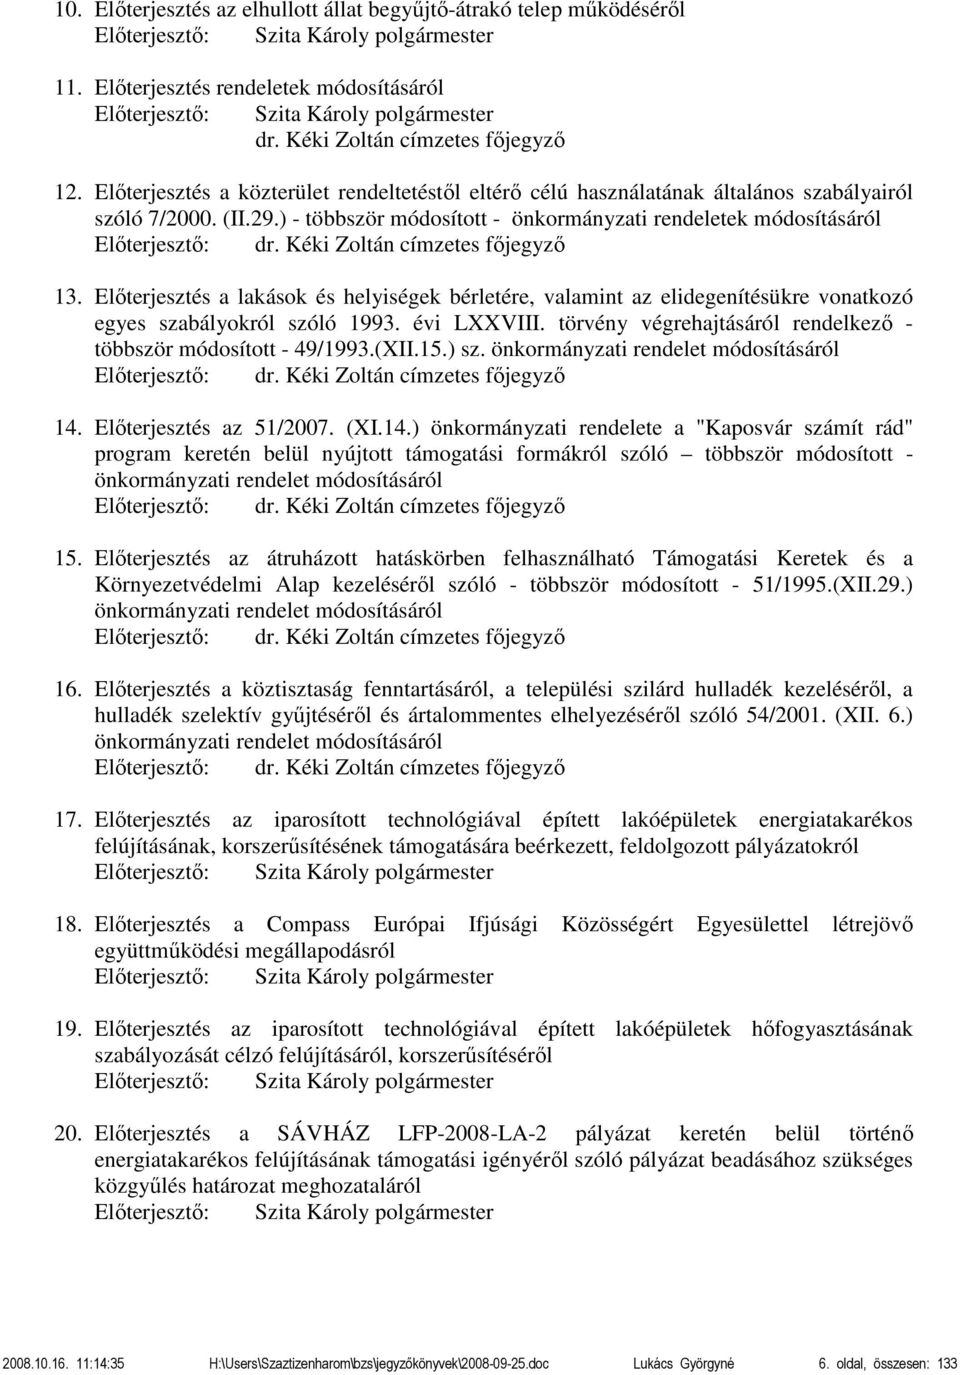 ) - többször módosított - önkormányzati rendeletek módosításáról Előterjesztő: dr. Kéki Zoltán címzetes főjegyző 13.